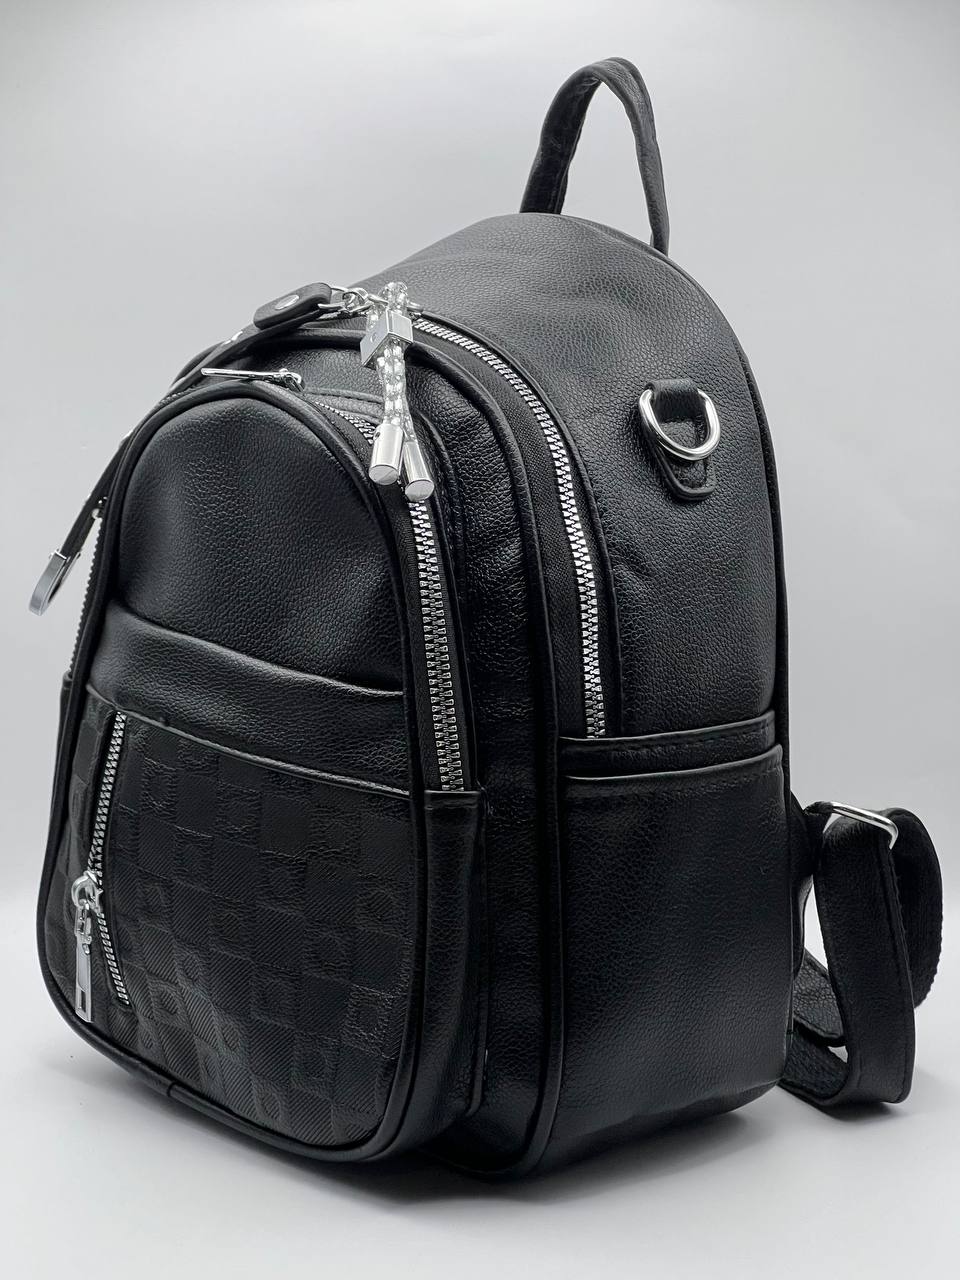 Сумка-рюкзак женская SunGold Р-59605 черная, 27х22х12 см